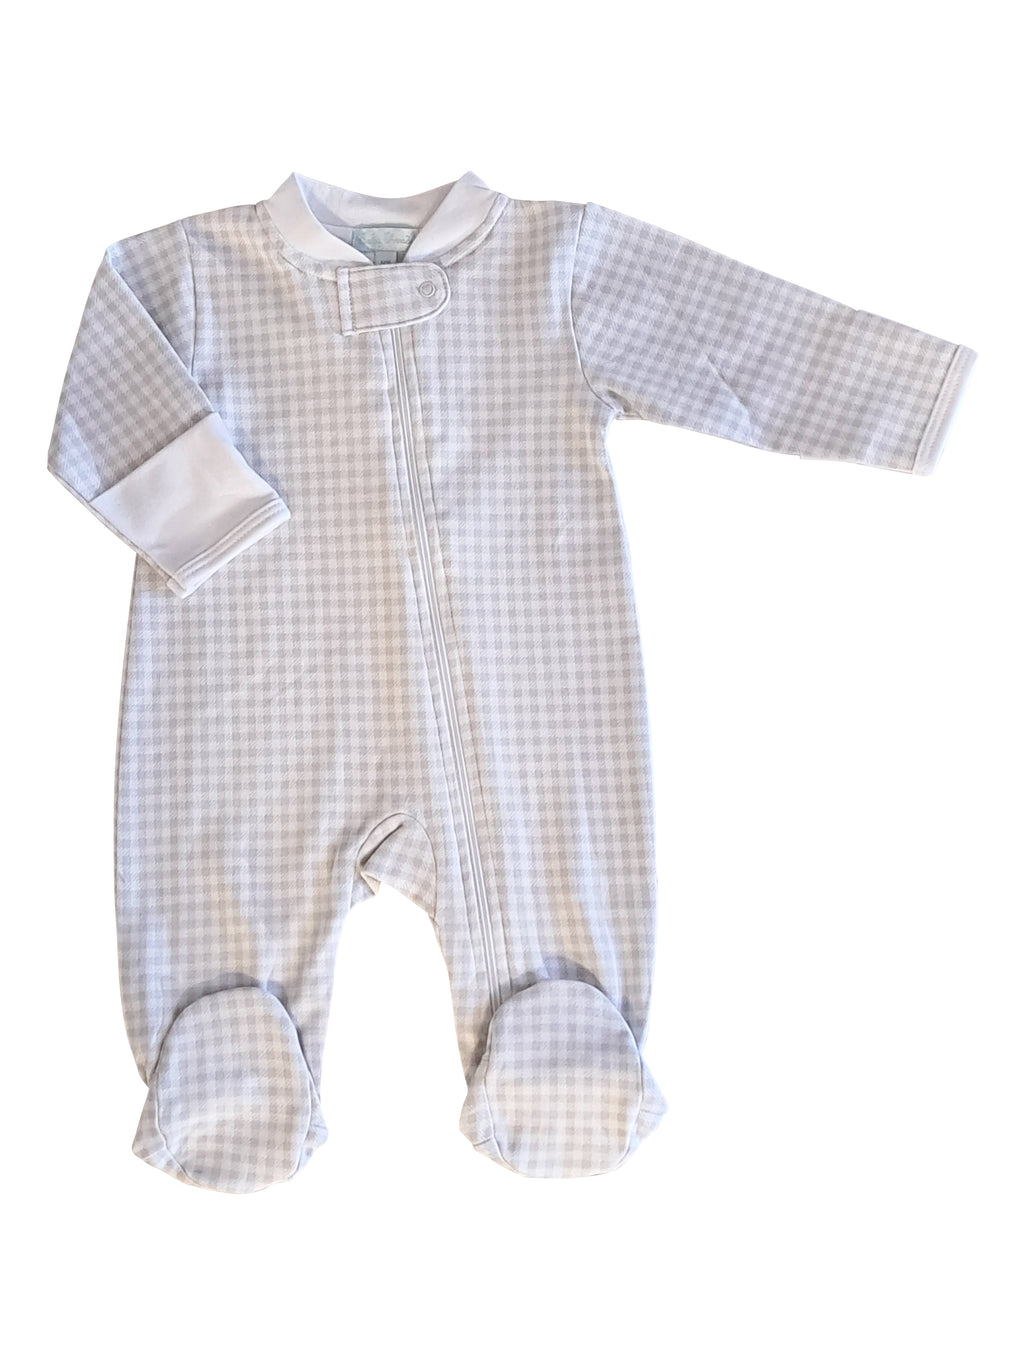 Baby "Grey Checks" Unisex  Zipper Pima Cotton Footie - Little Threads Inc. Children's Clothing